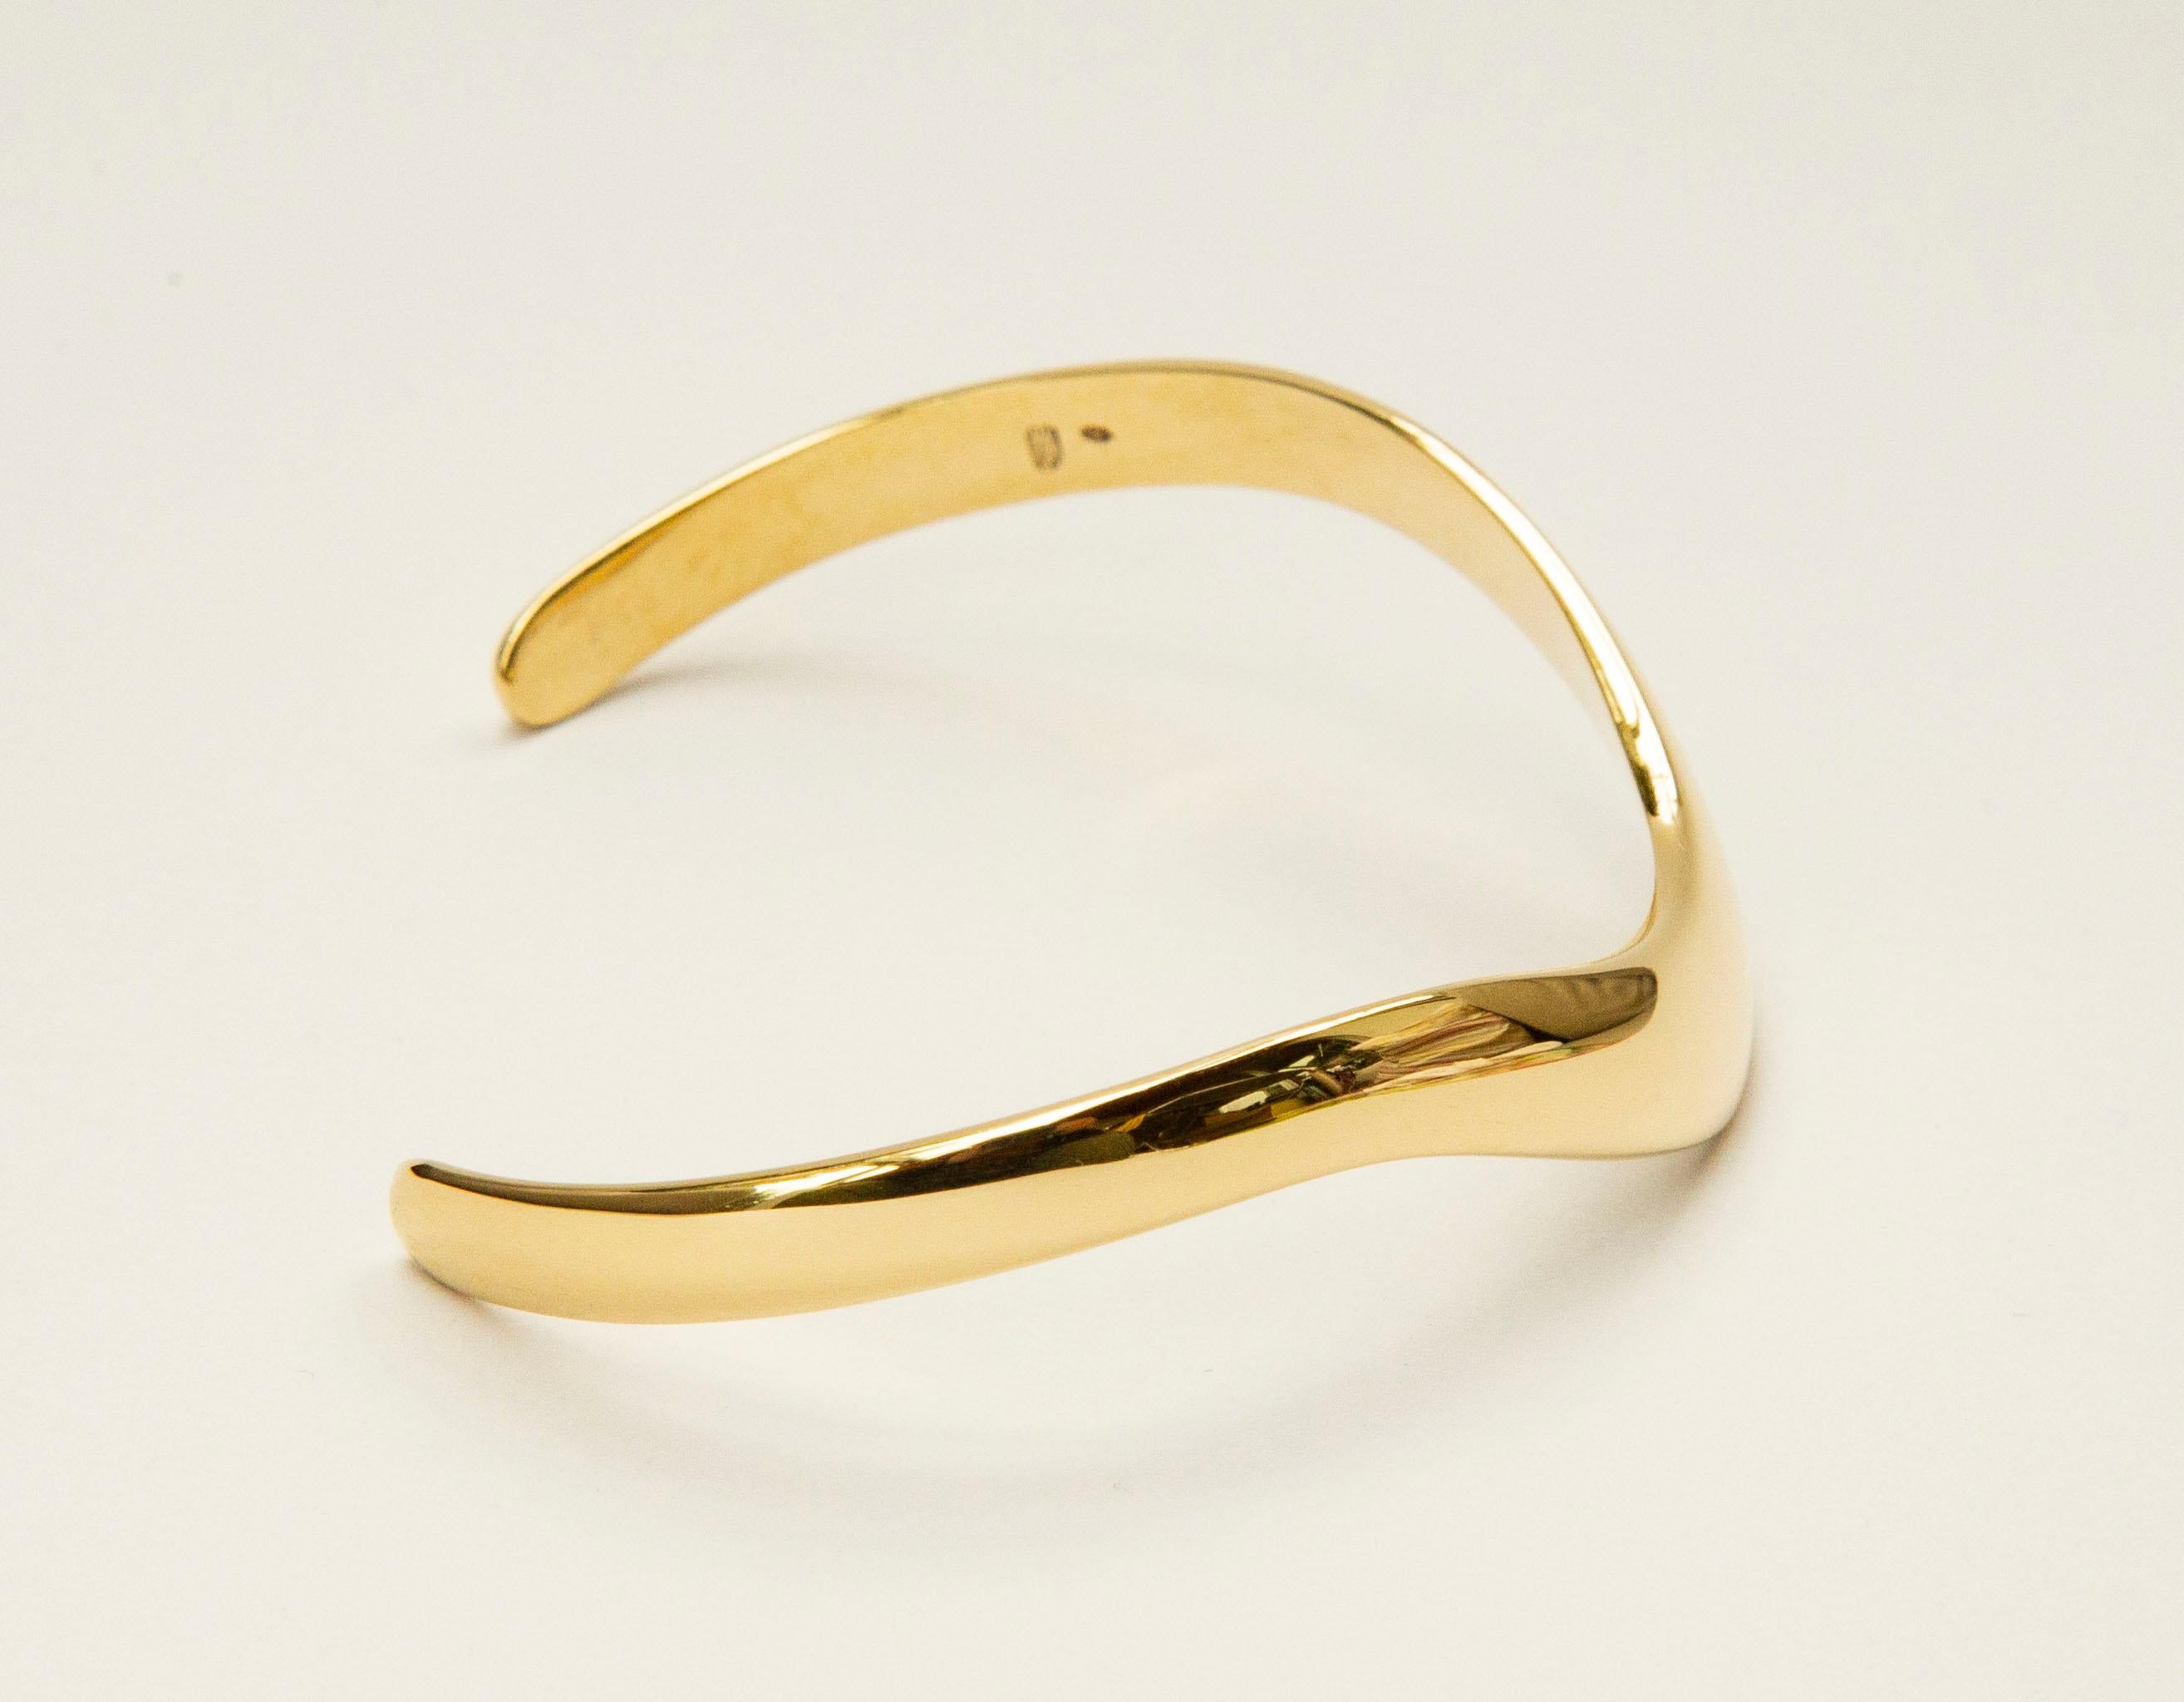 14 Karat Yellow Gold Cuff Bracelet Scandinavian Modern Minimalist Design In Good Condition For Sale In Arnhem, NL